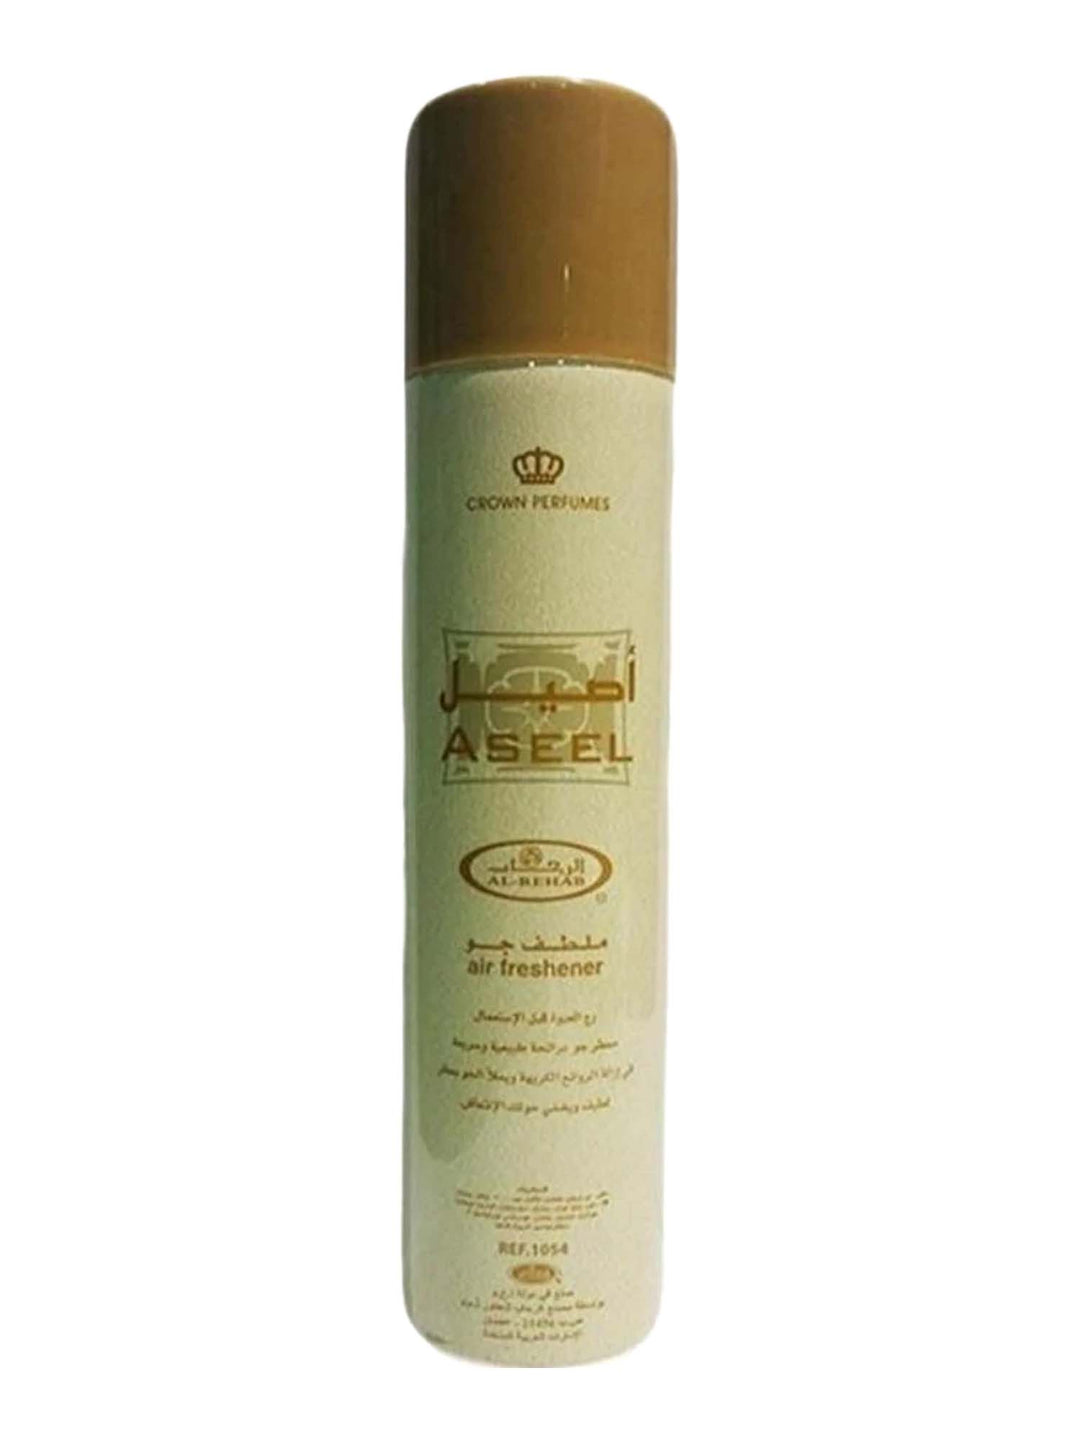 Air Freshener - Crown Perfumes - Aseel - 300ml